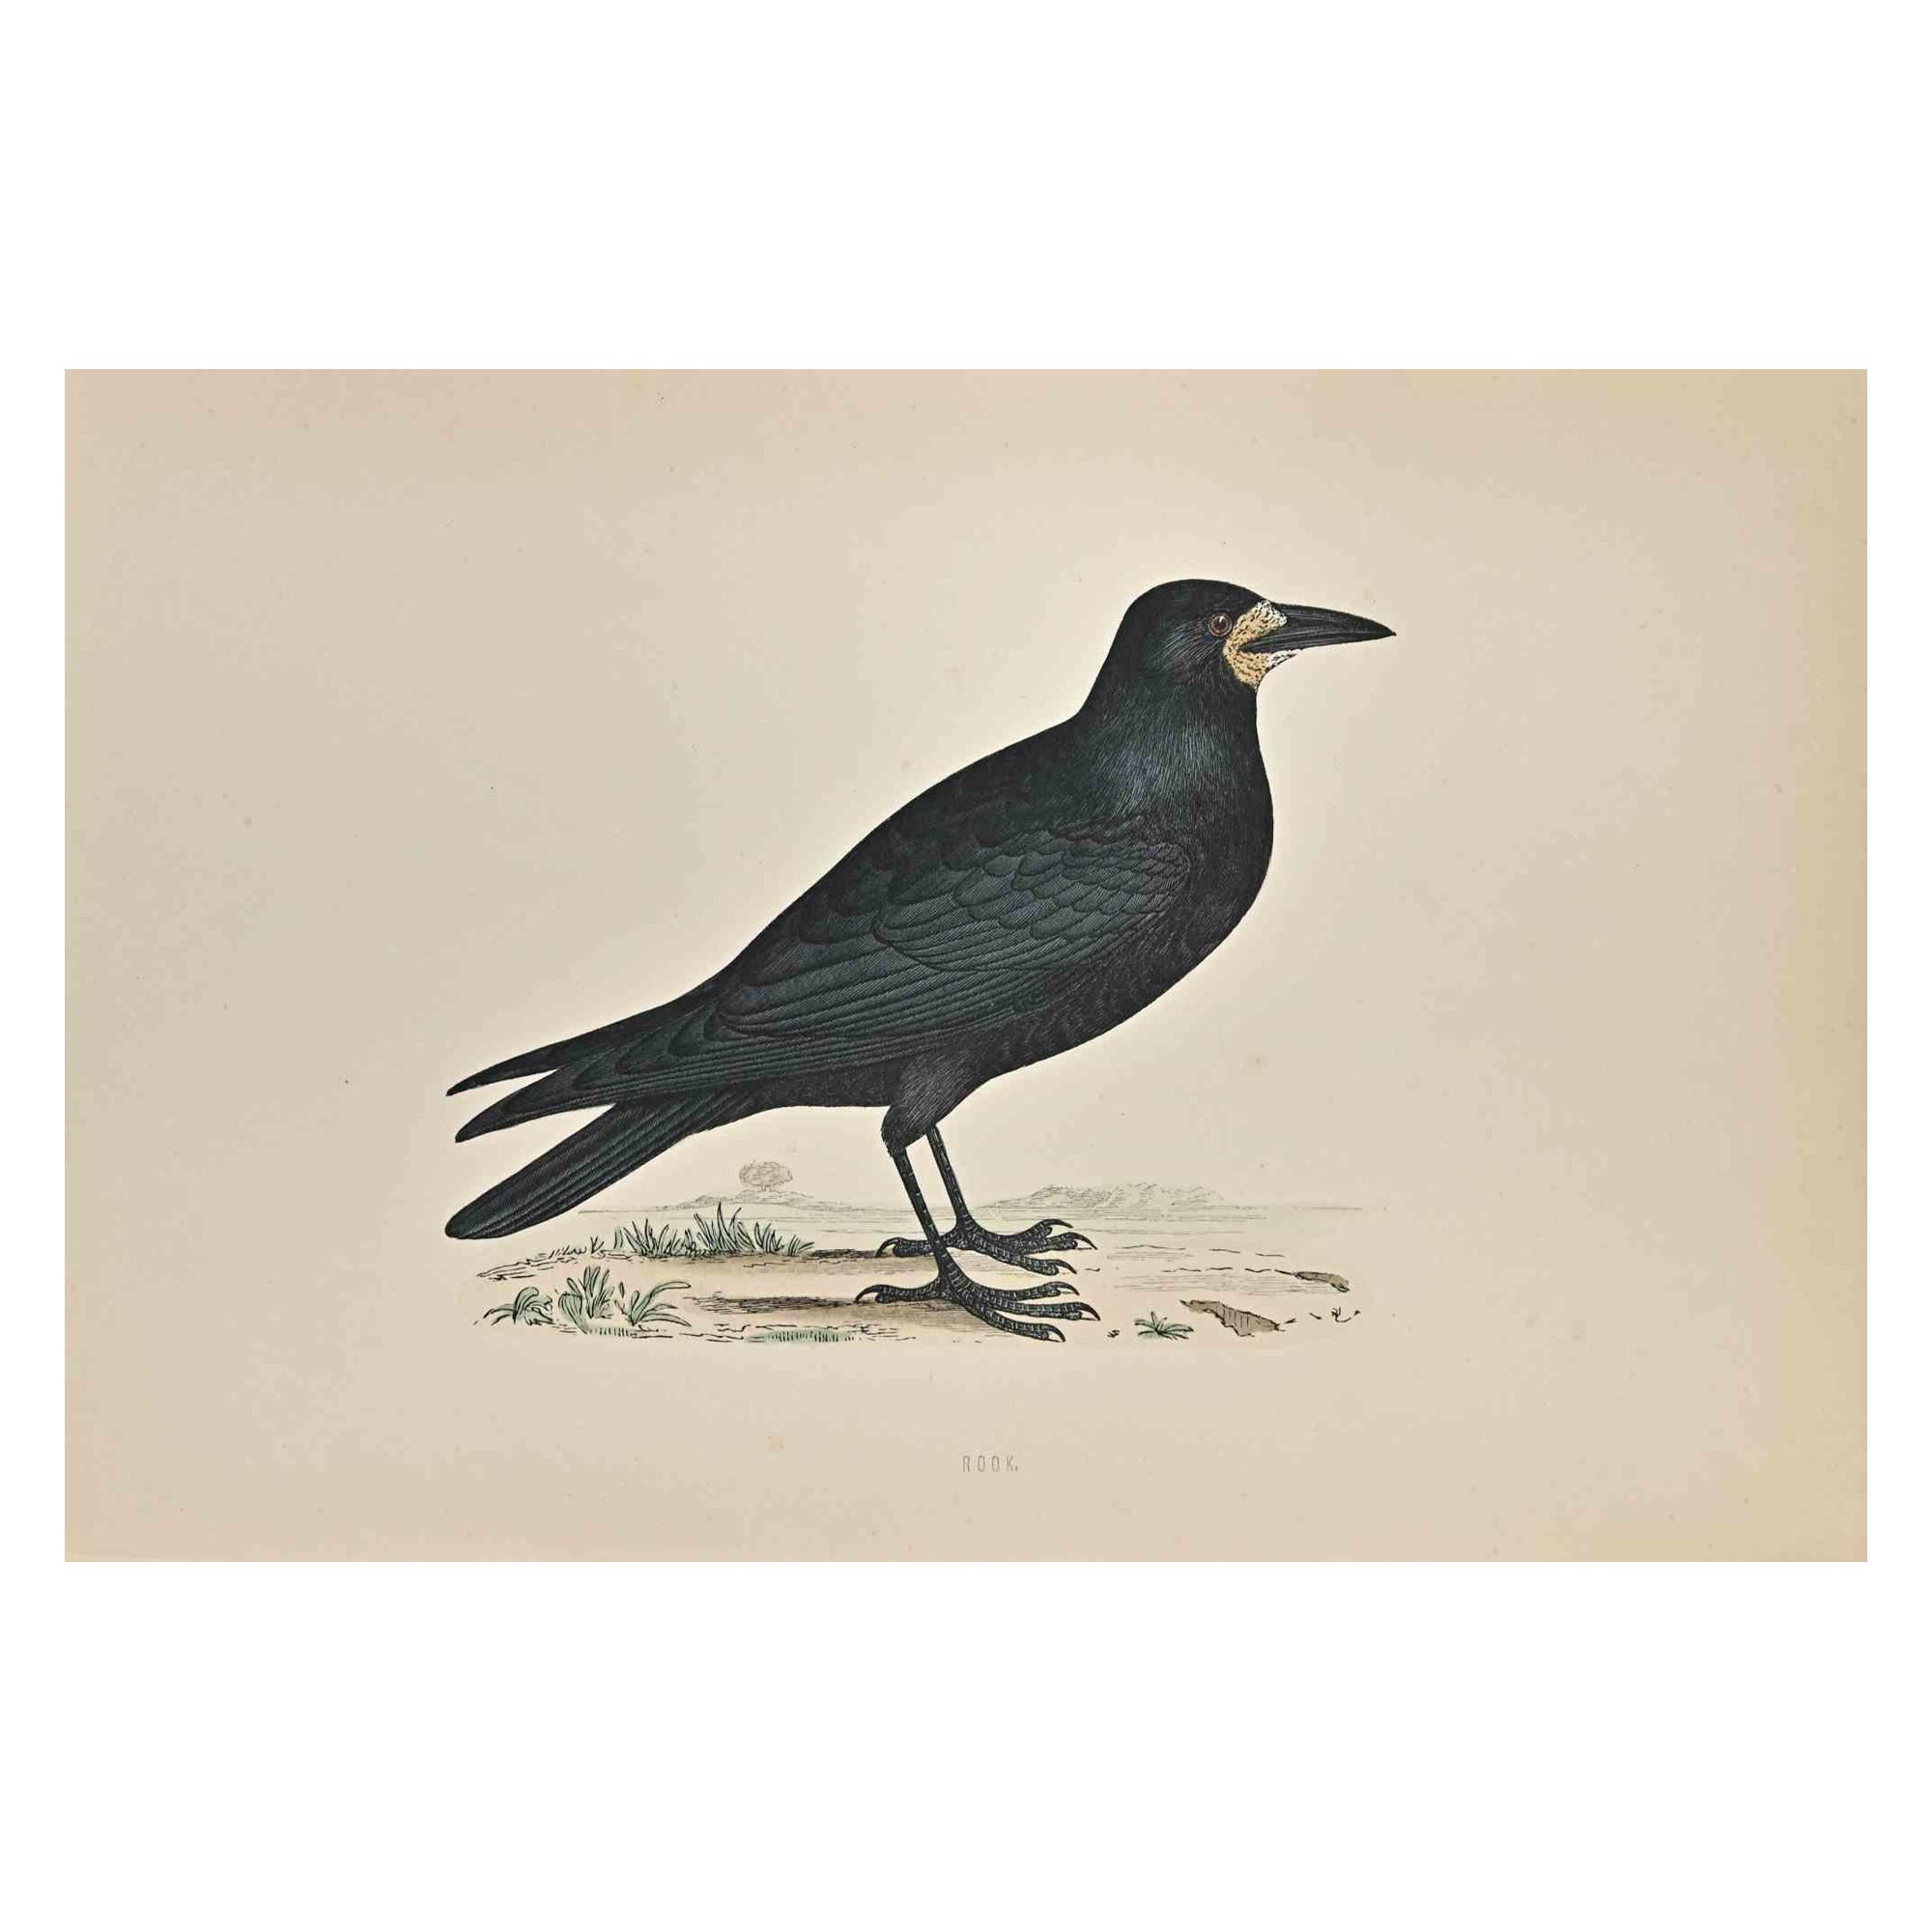  Rook ist ein modernes Kunstwerk, das 1870 von dem britischen Künstler Alexander Francis Lydon (1836-1917) geschaffen wurde. 

Holzschnitt, handkoloriert, veröffentlicht von London, Bell & Sons, 1870.  Name des Vogels in der Platte gedruckt. Dieses